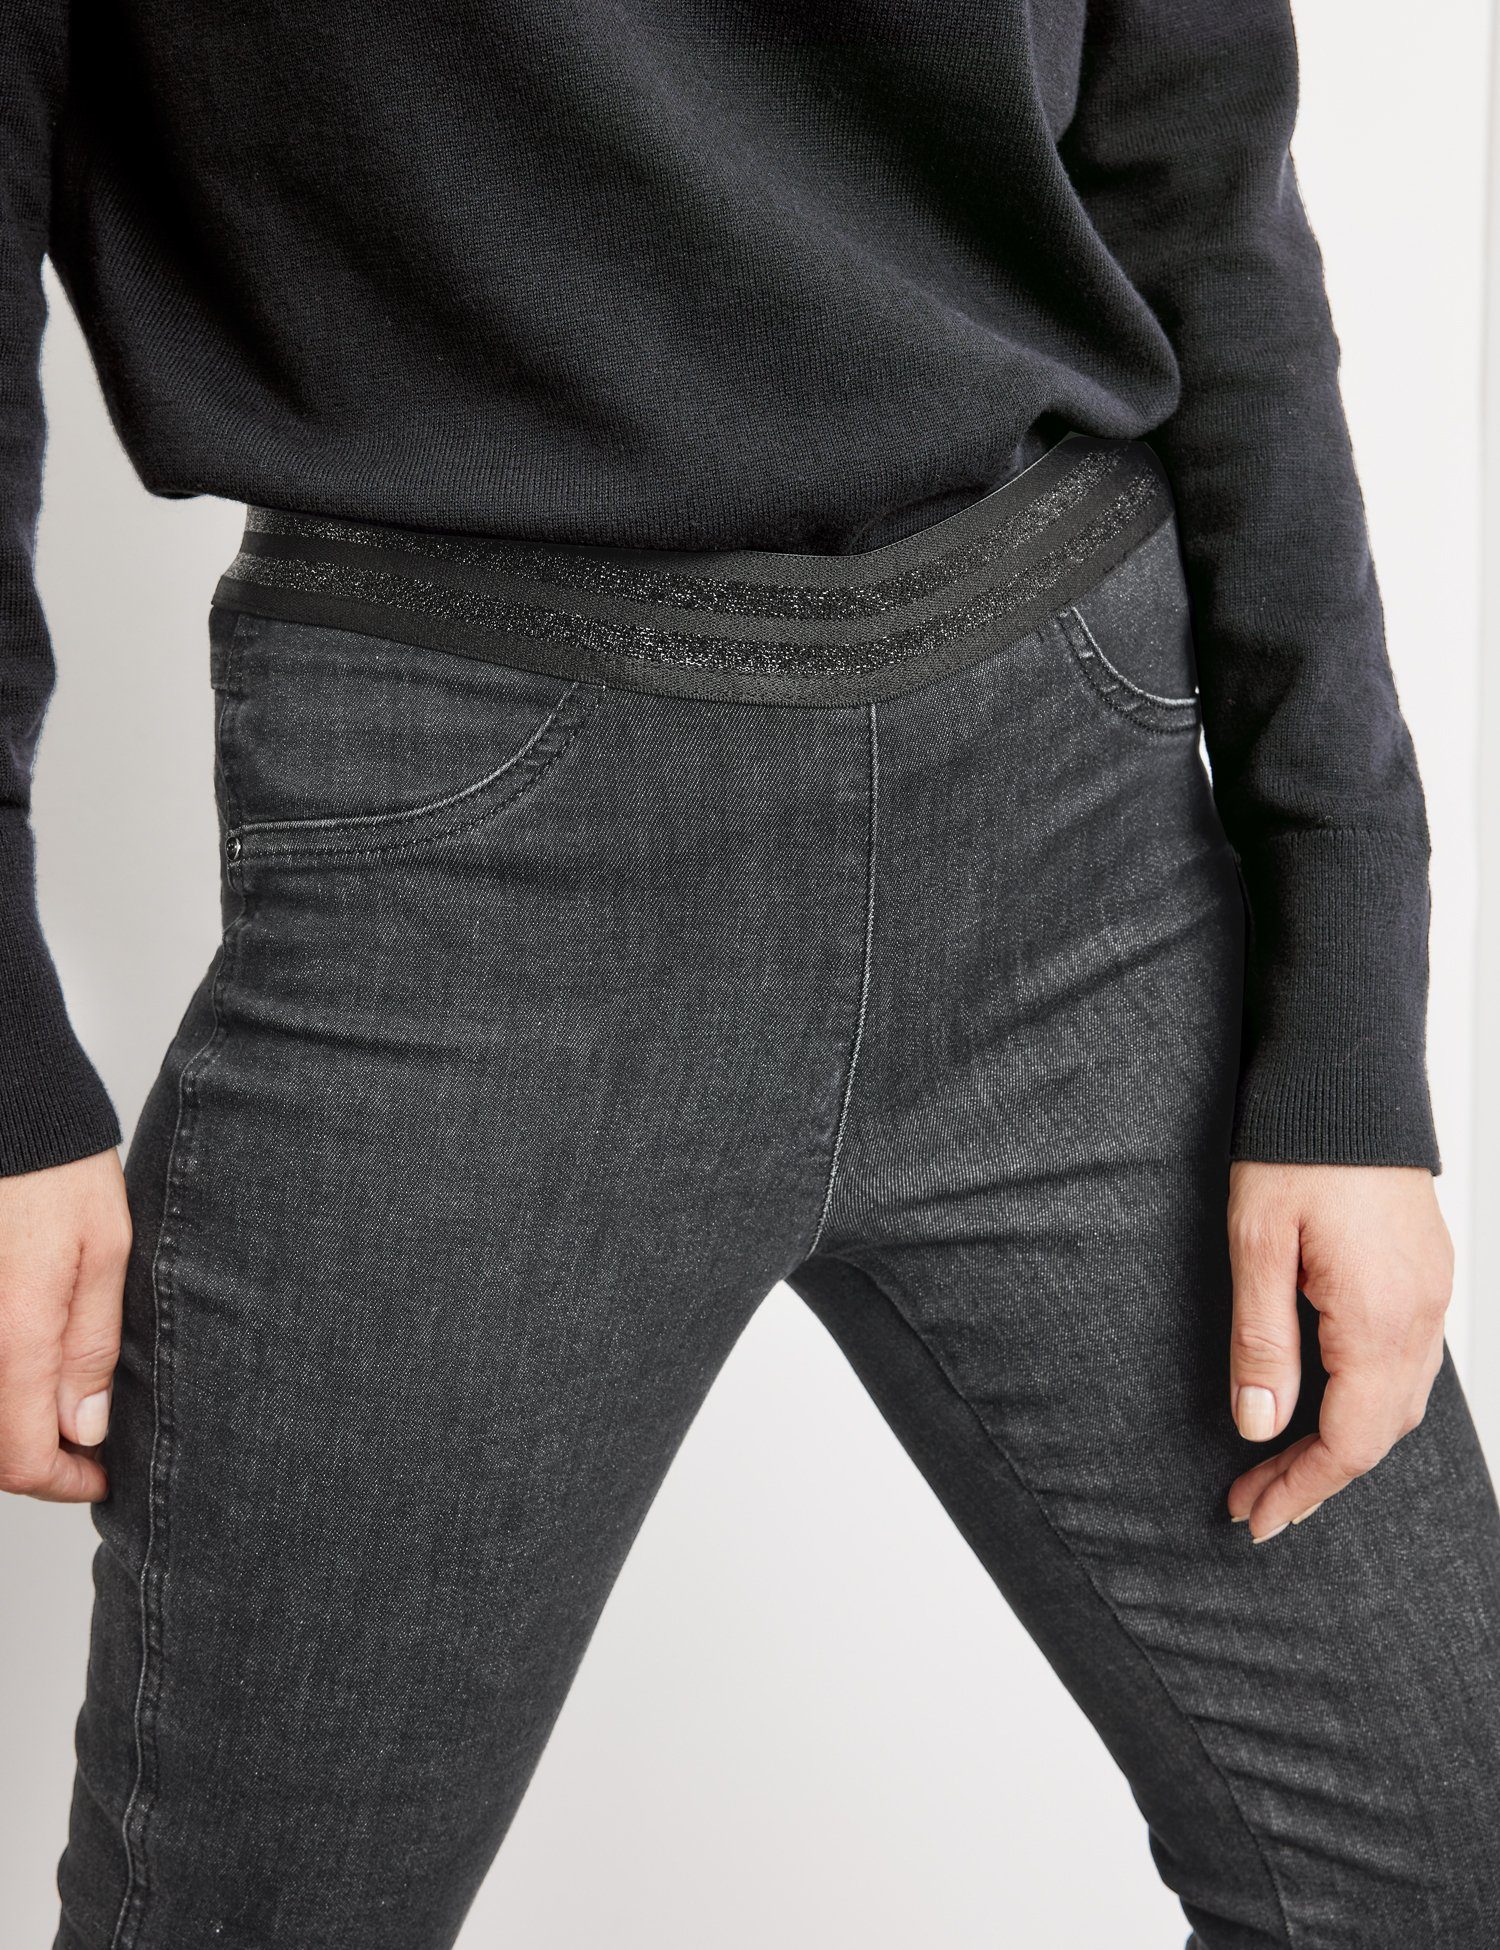 WEBER GERRY Jeggings Denim Körpernahe SHAPE 7/8-Jeans BEST4ME Black